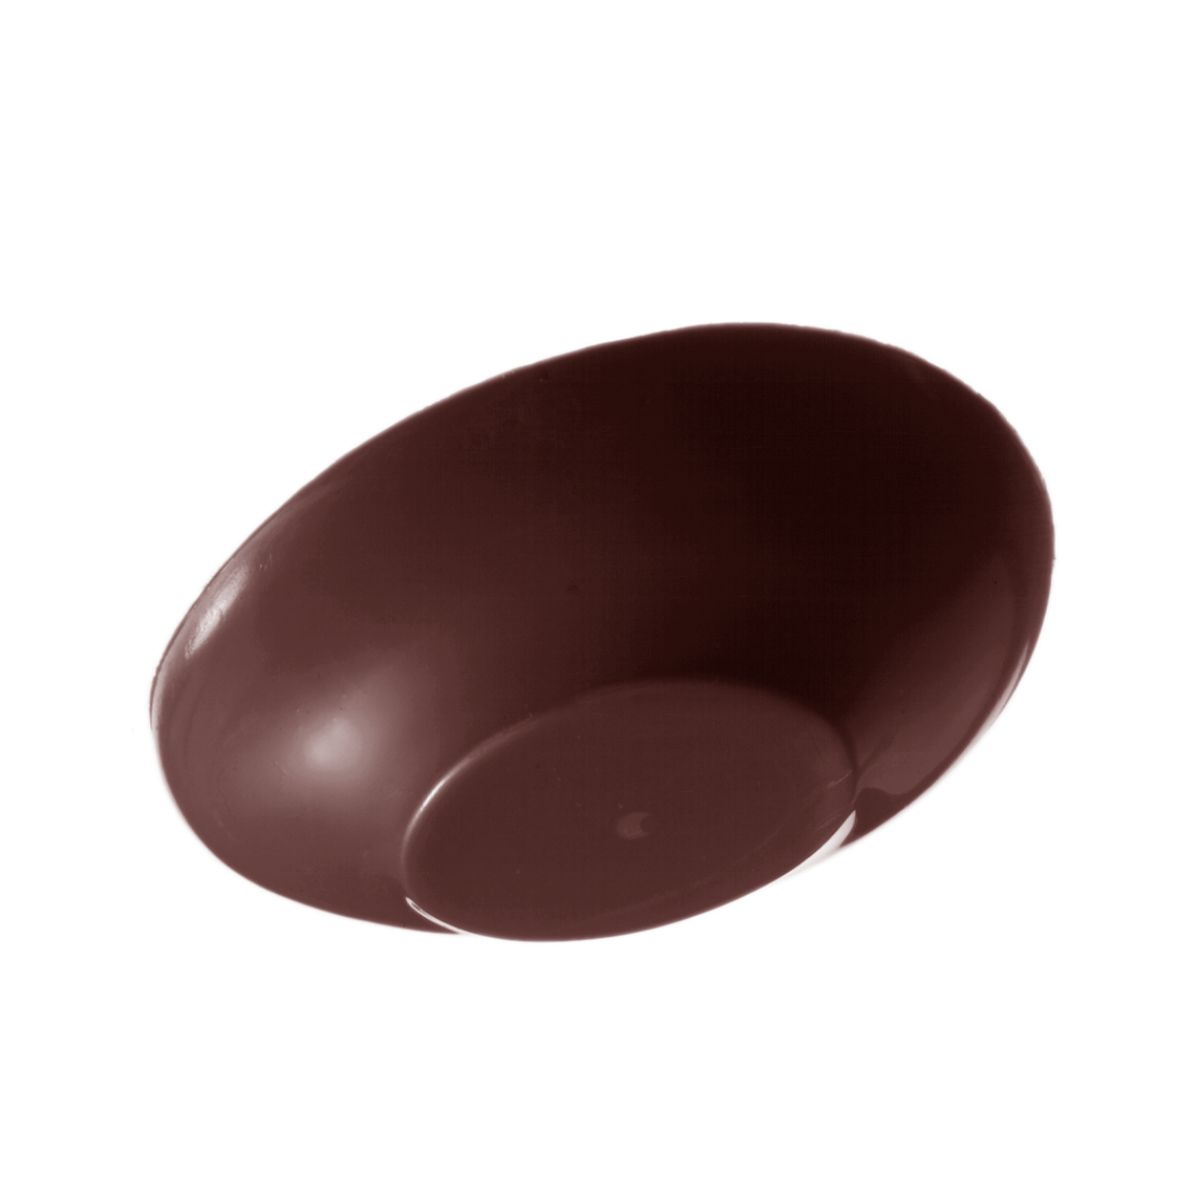 Professionel chokoladeform i polycarbonat - Påskeæg 15cm Med Fod E7008/150